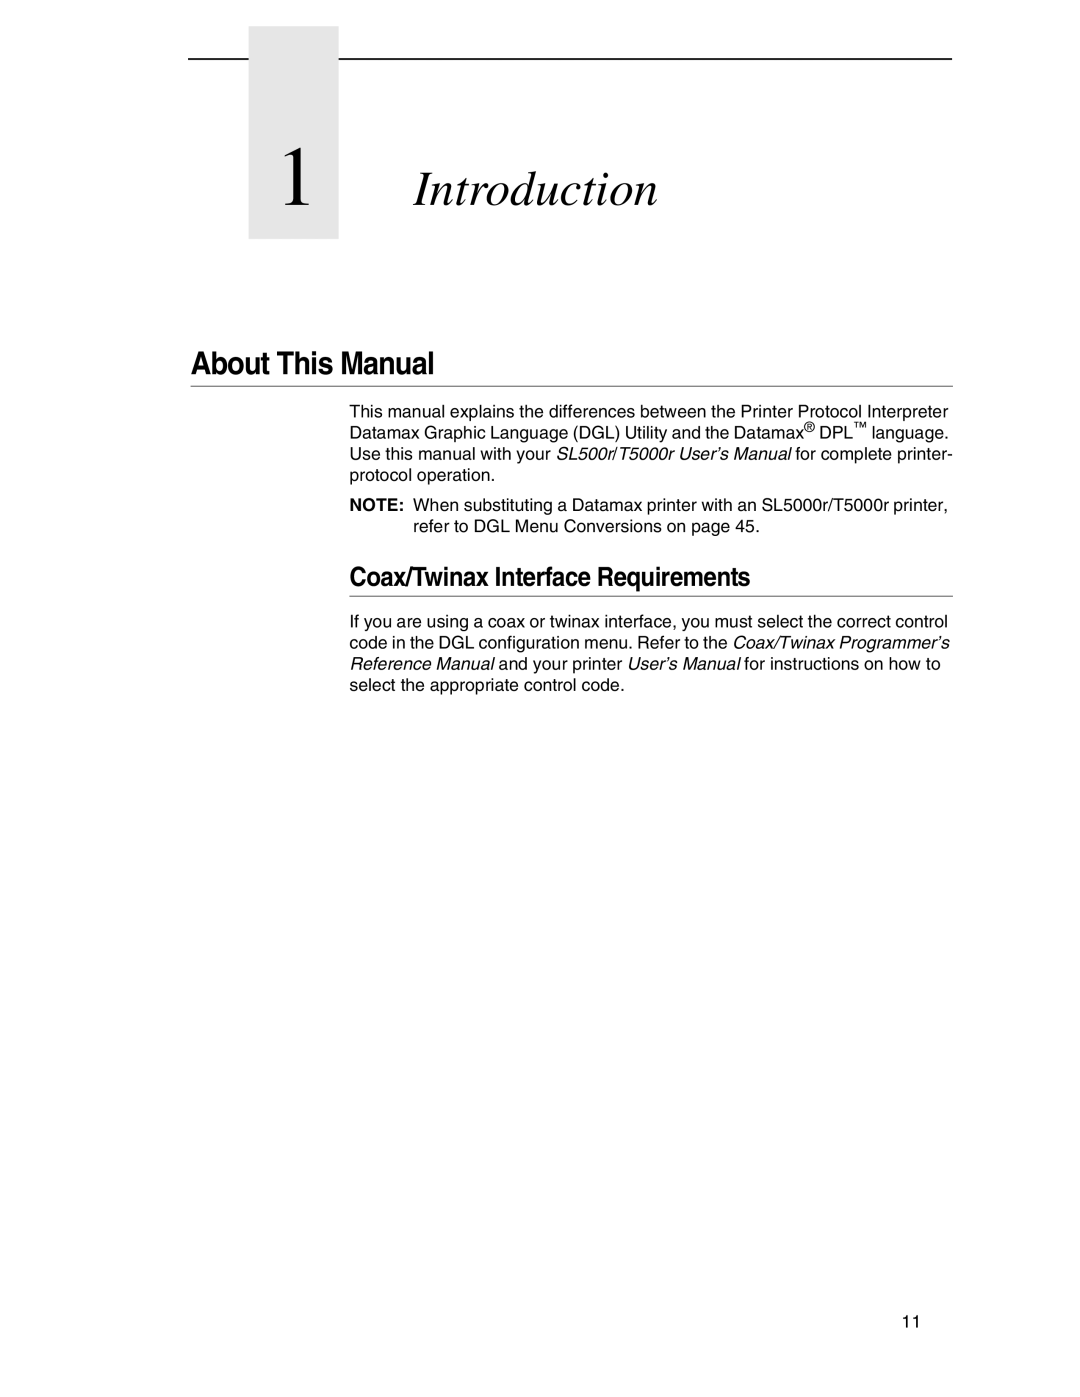 Datamax DGL manual Introduction 